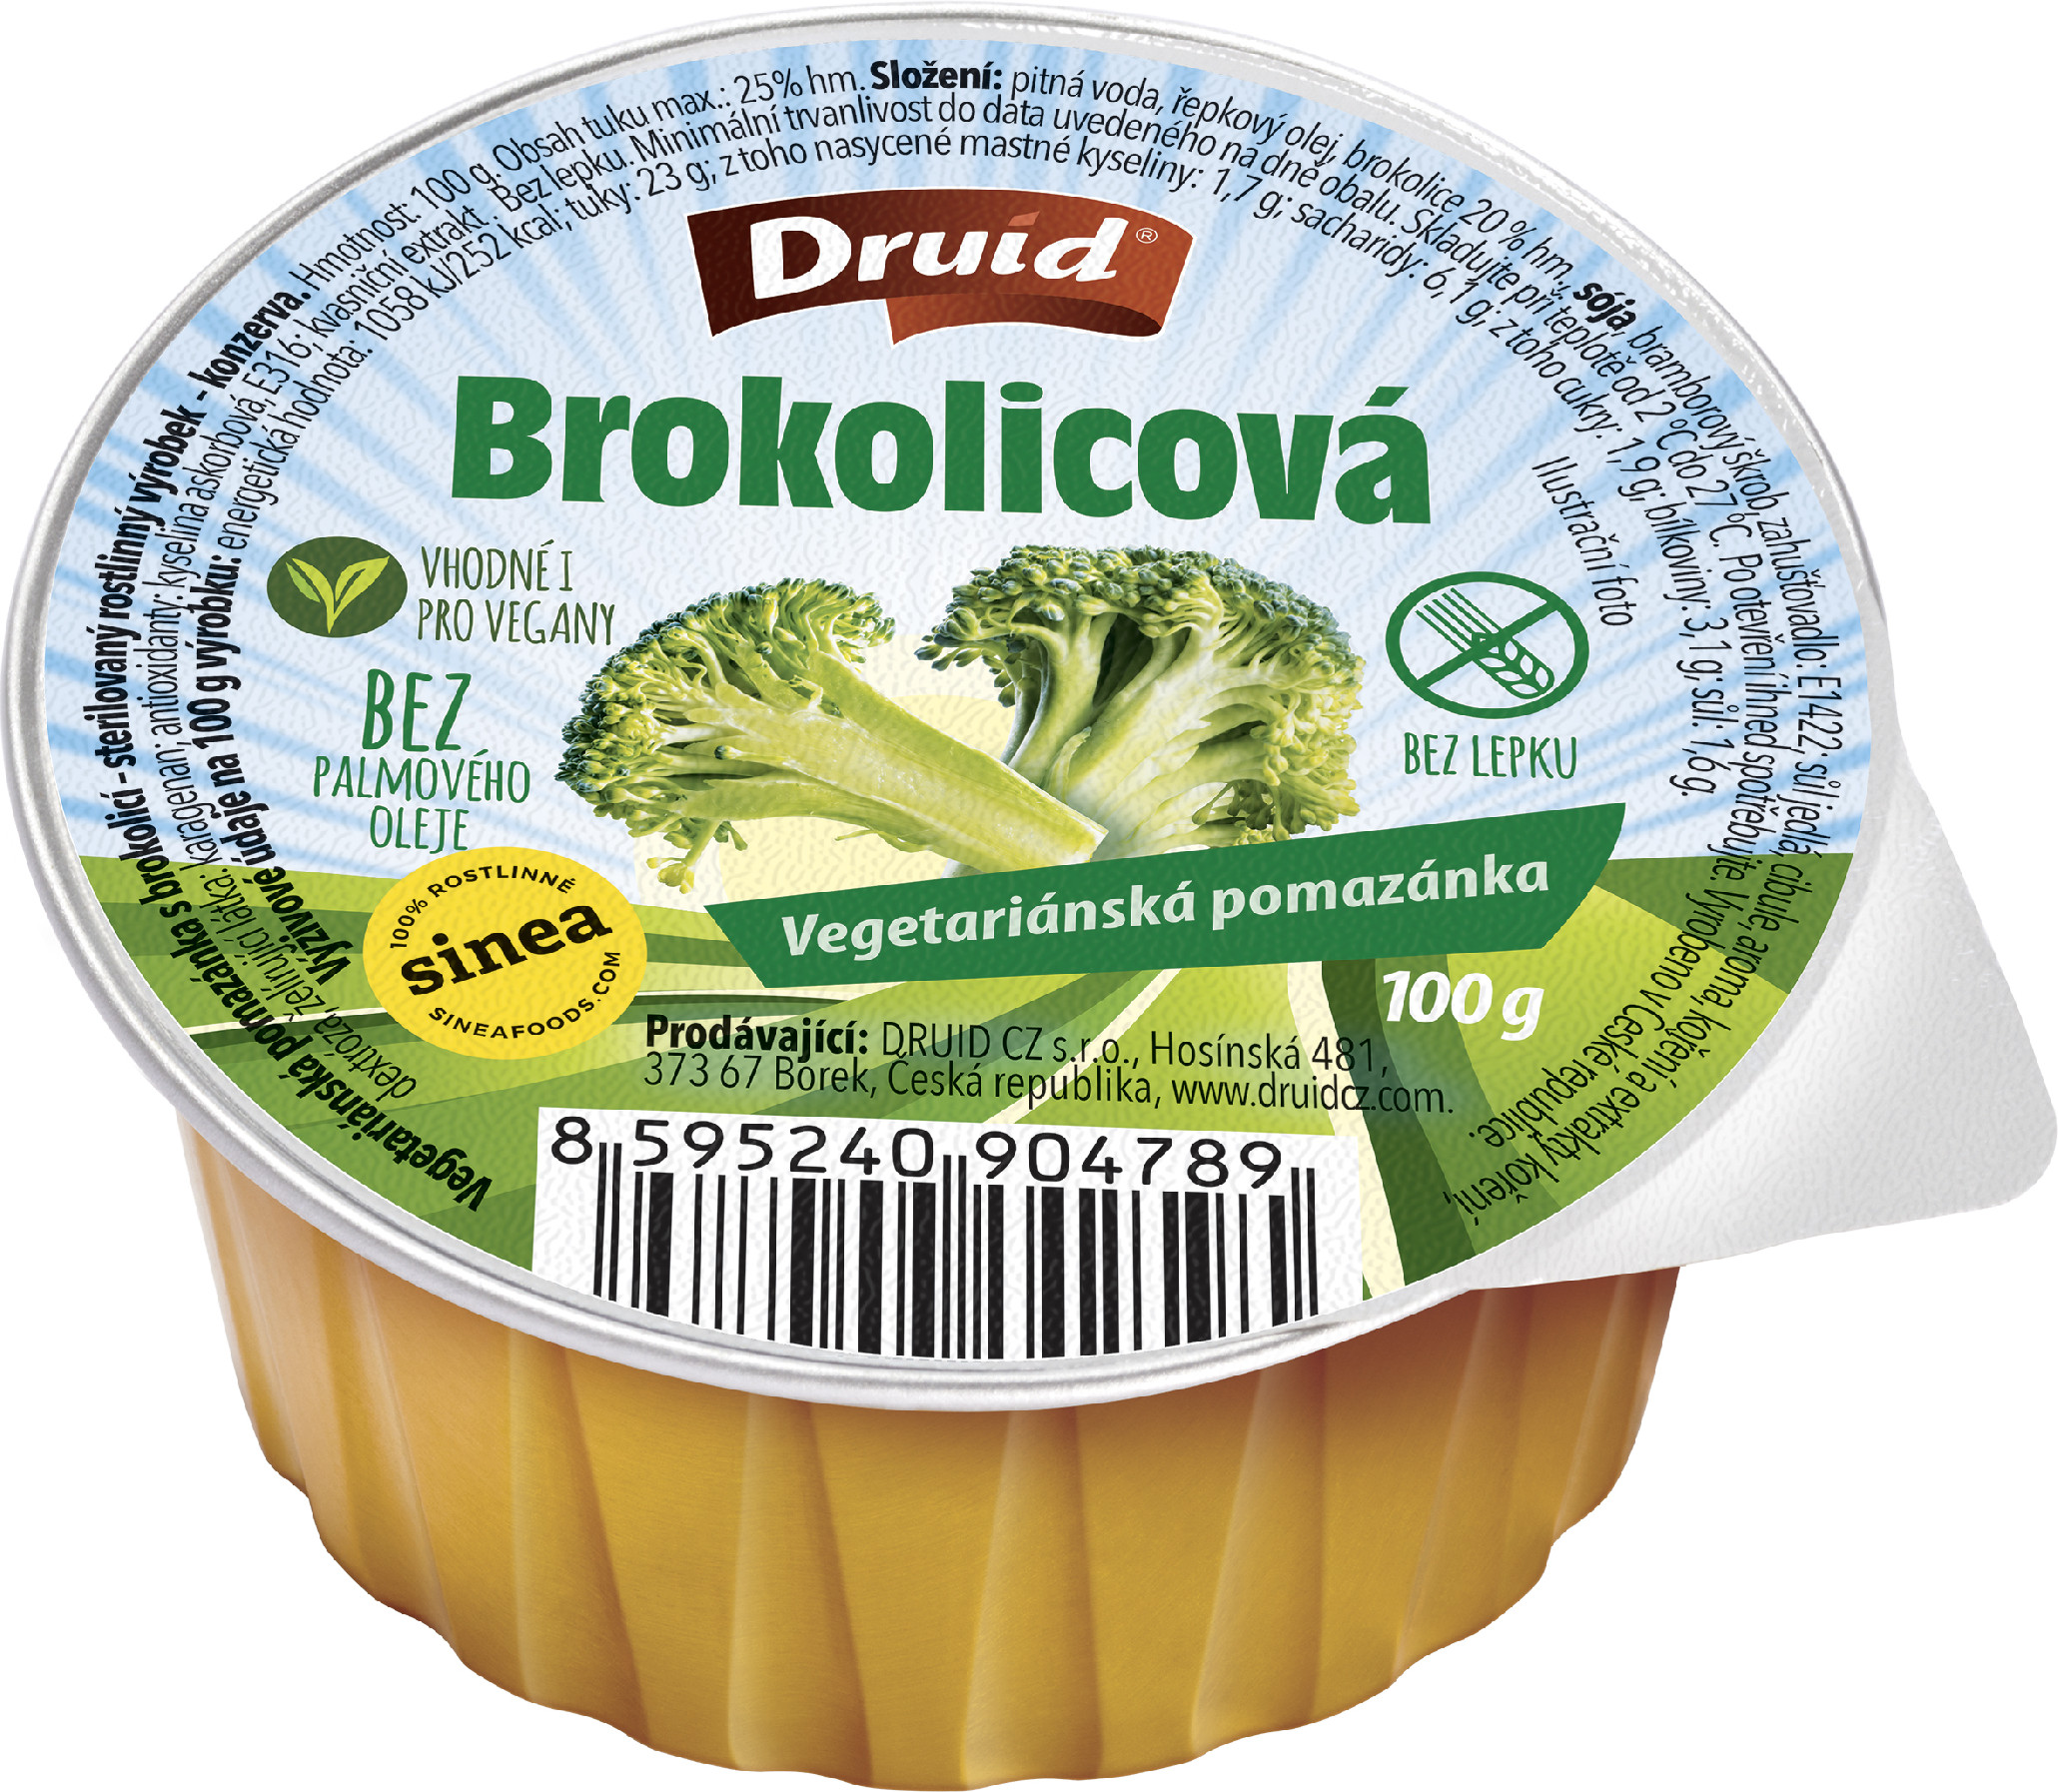 DRUID Veganská pomazánka brokolicová 100g